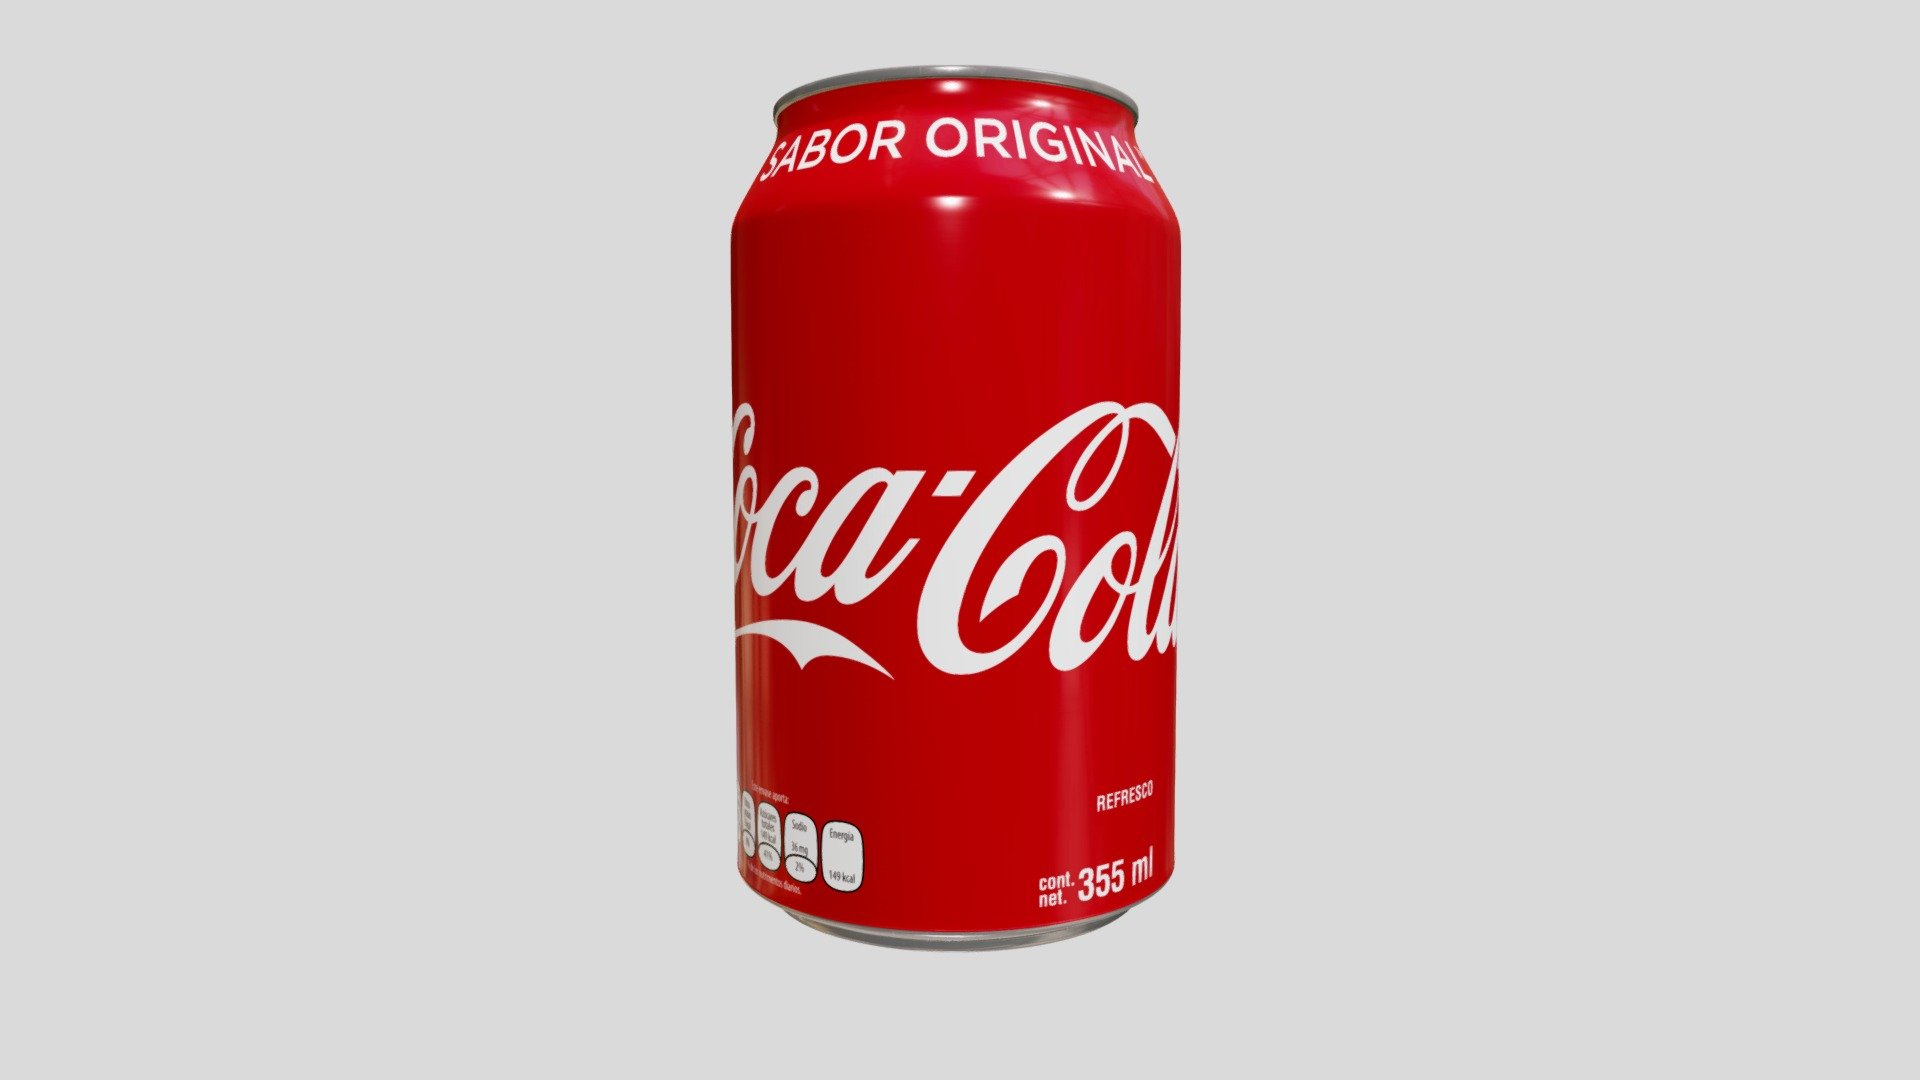 Coca-Cola 355ml. - 3D model by Santiago.Camino [cb27072] - Sketchfab